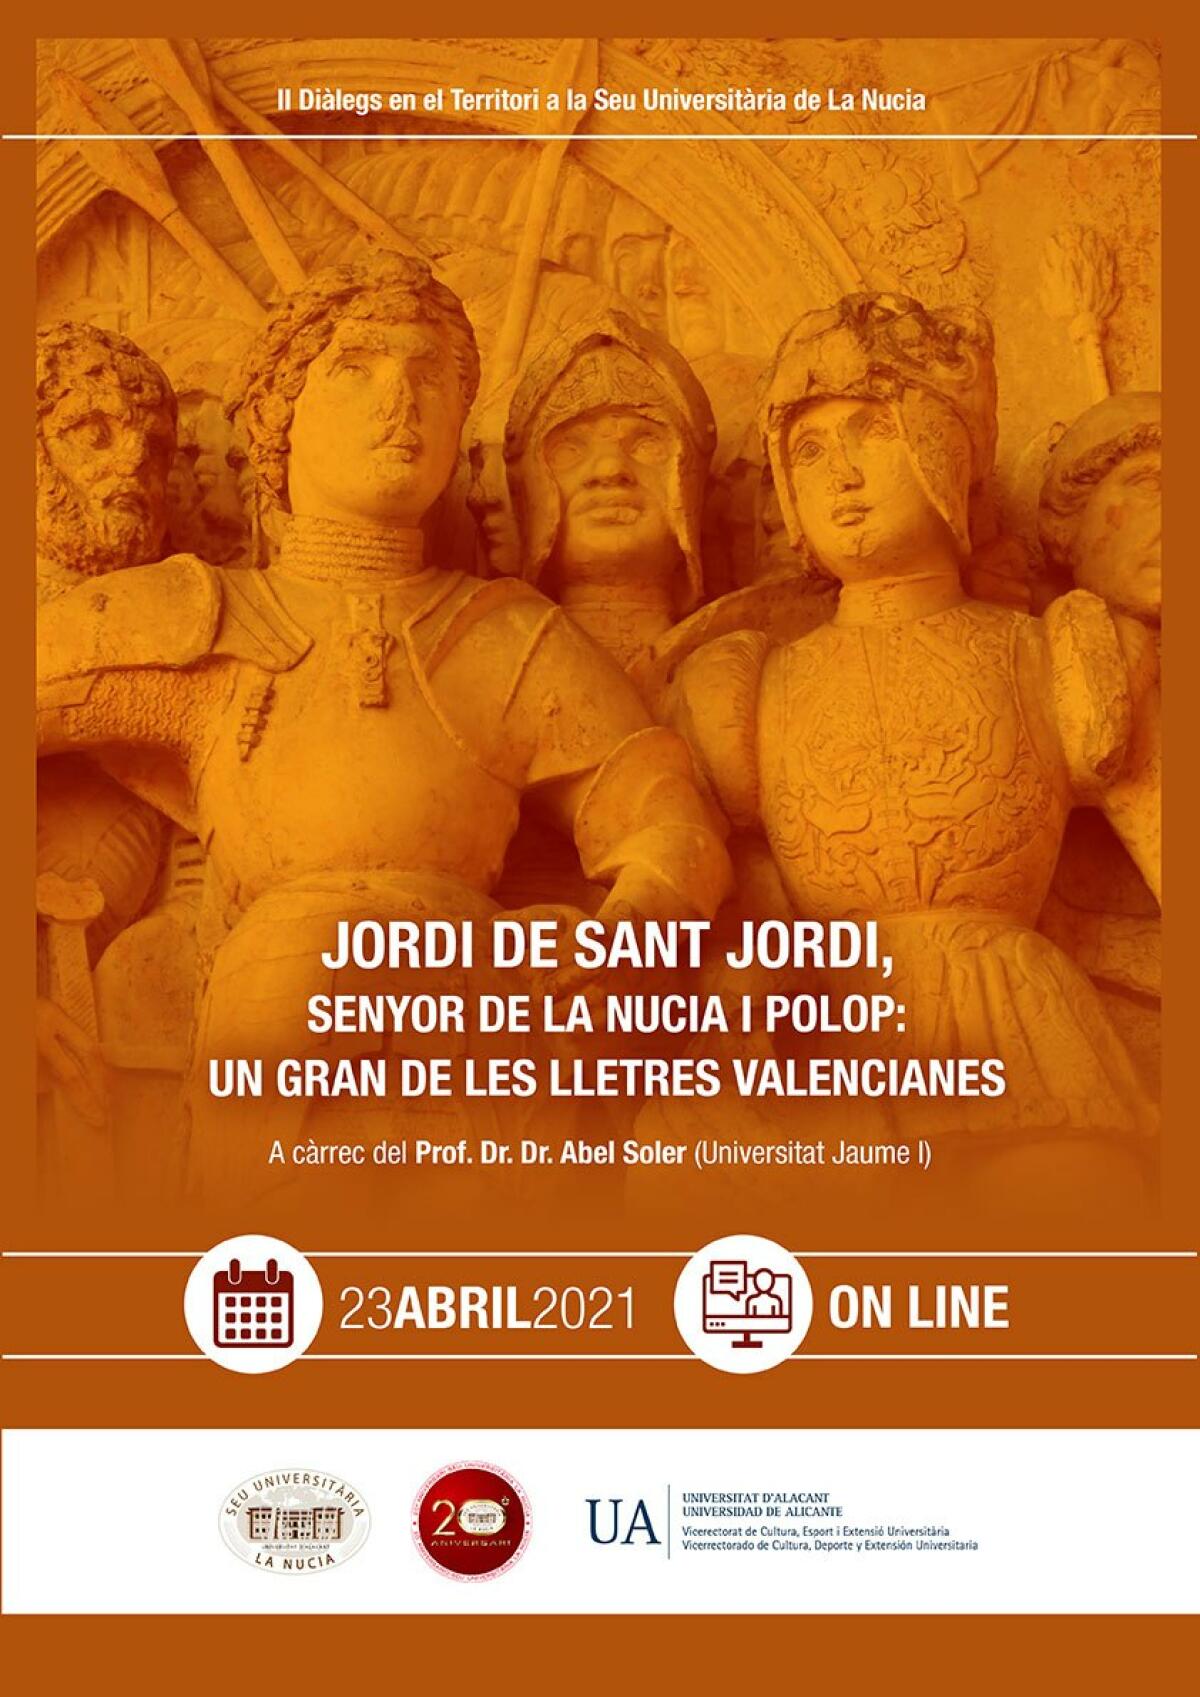 Hoy conferencia on-line “Jordi de Sant Jordi, senyor de La Nucia i Polop” de la Seu